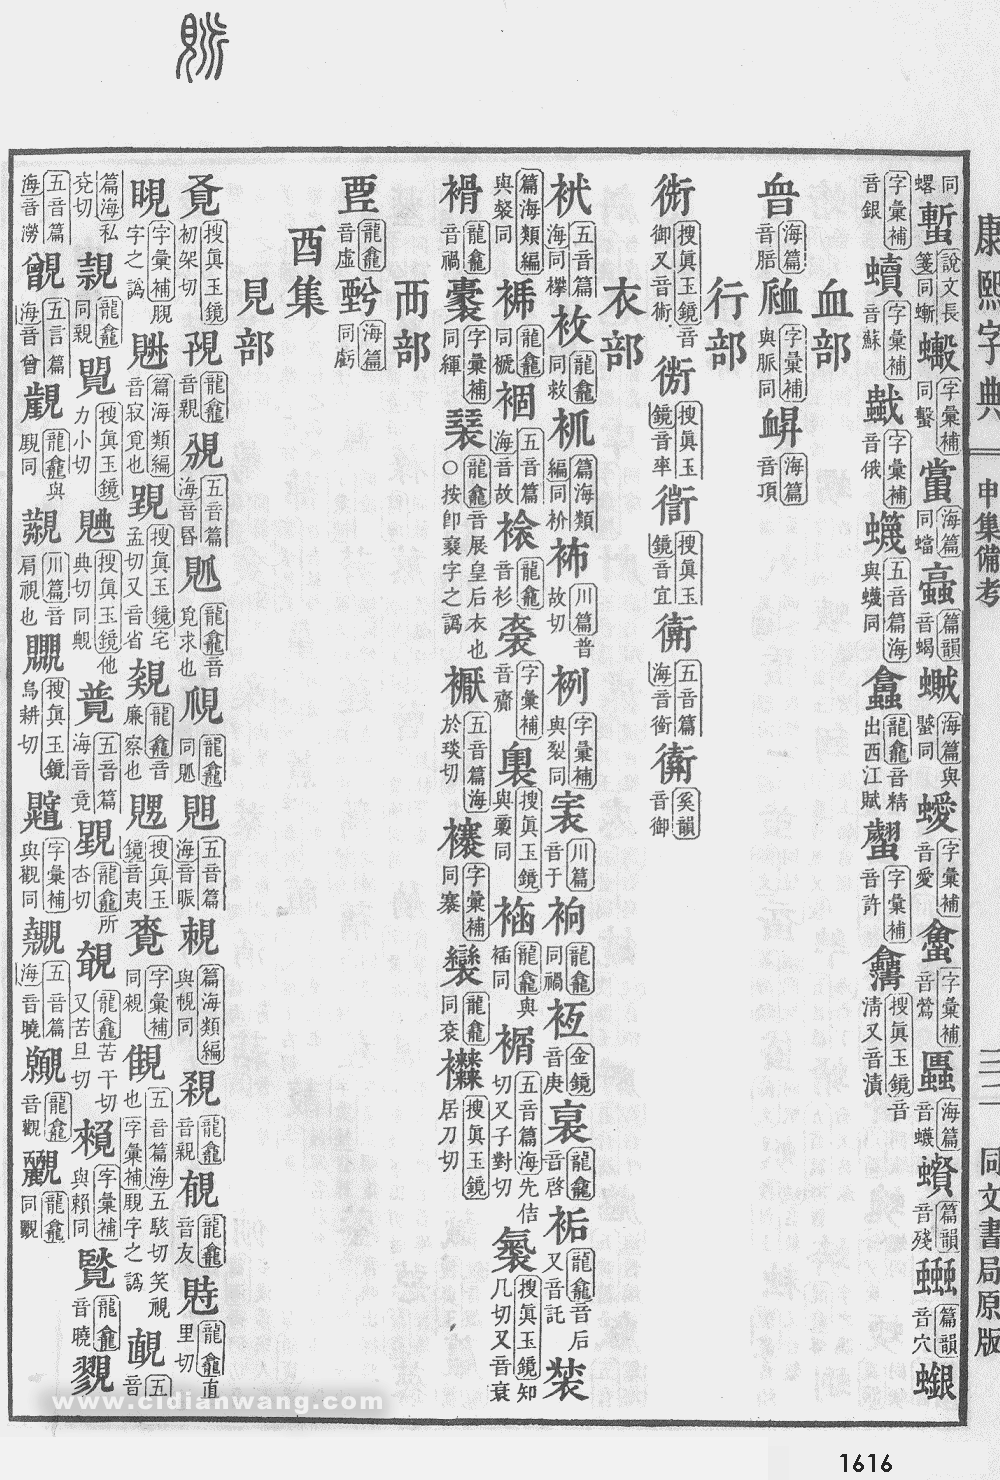 康熙字典掃描版第1616頁